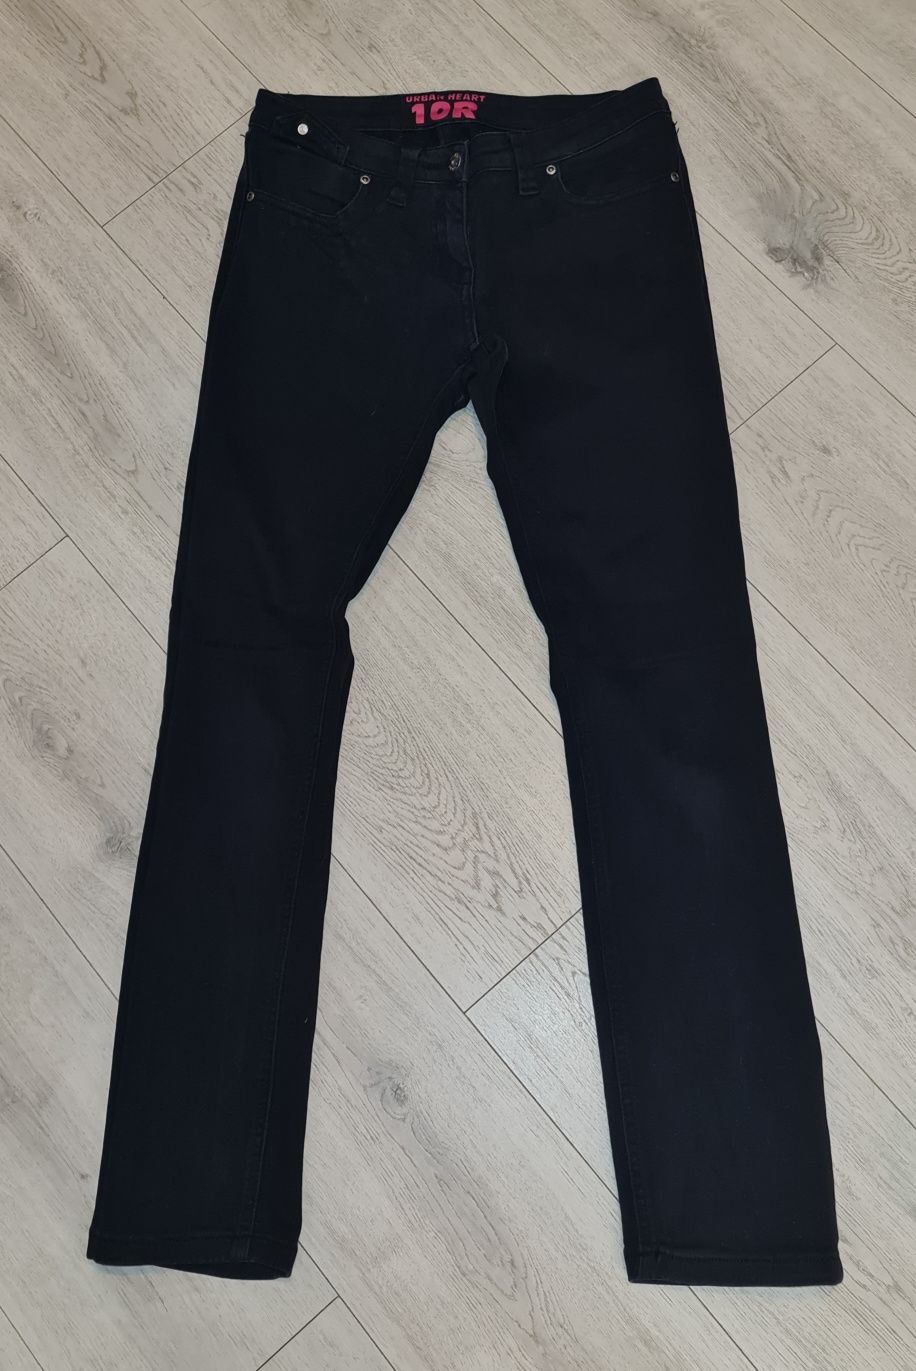 Spodnie damskie jeans skinny zdobienie czerń rozm 36/38